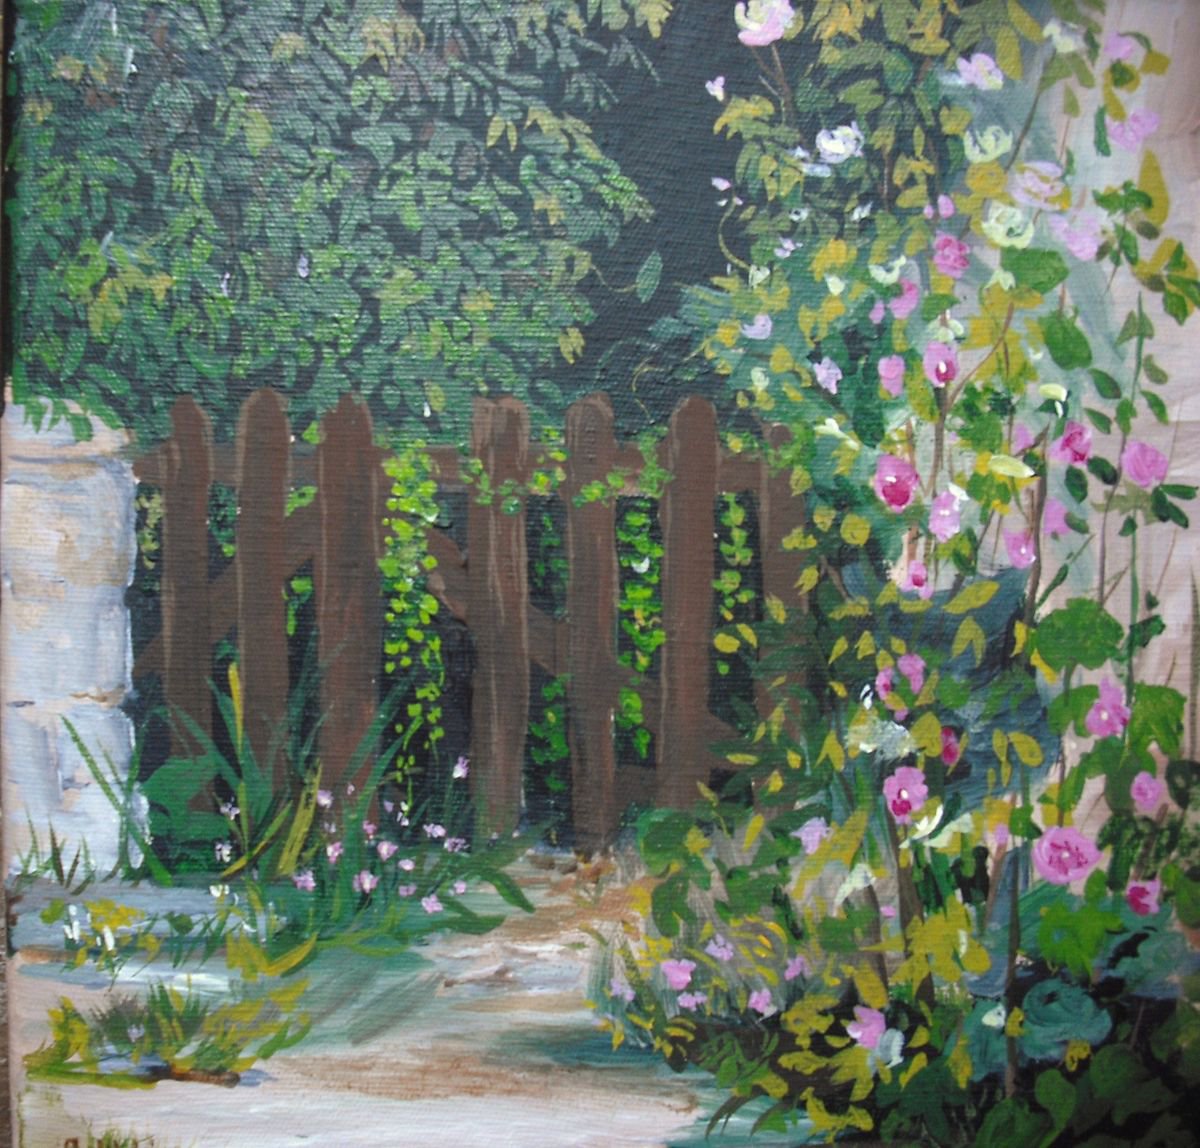 Secret garden by Martine Vinsot